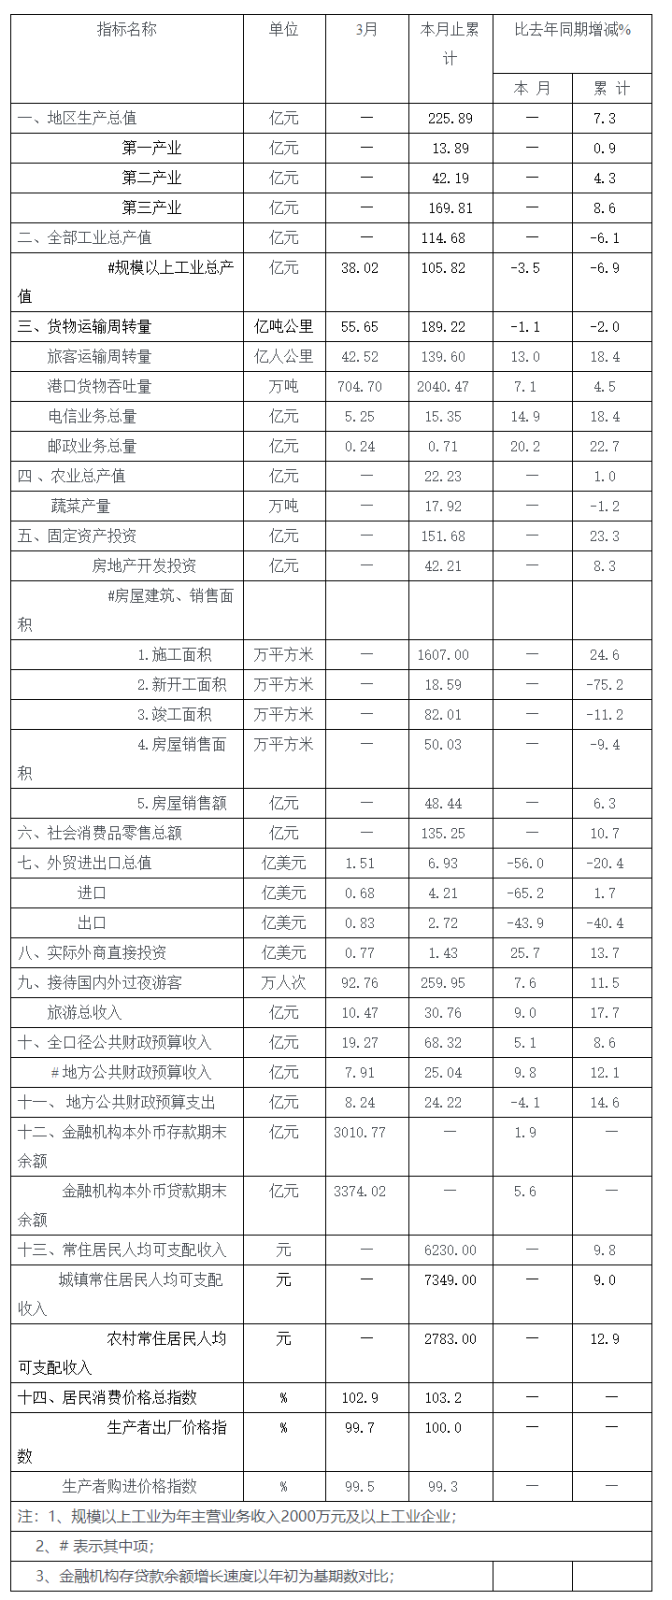 2014年3月全市主要经济指标.png